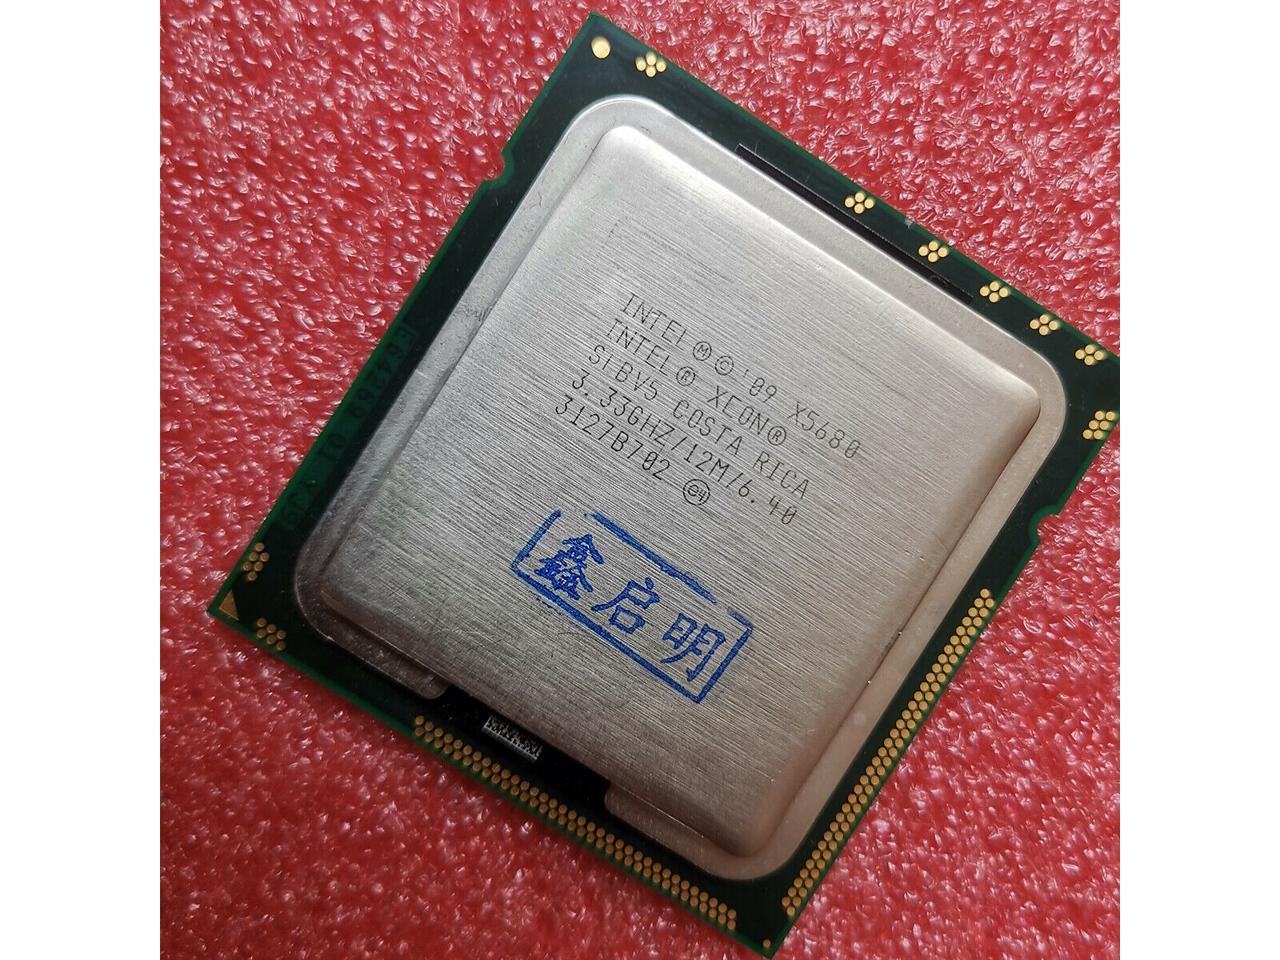 Intel Xeon X5680 Westmere 12MB L3 Cache LGA 1366 130W BX80614X5680 Server  Processor